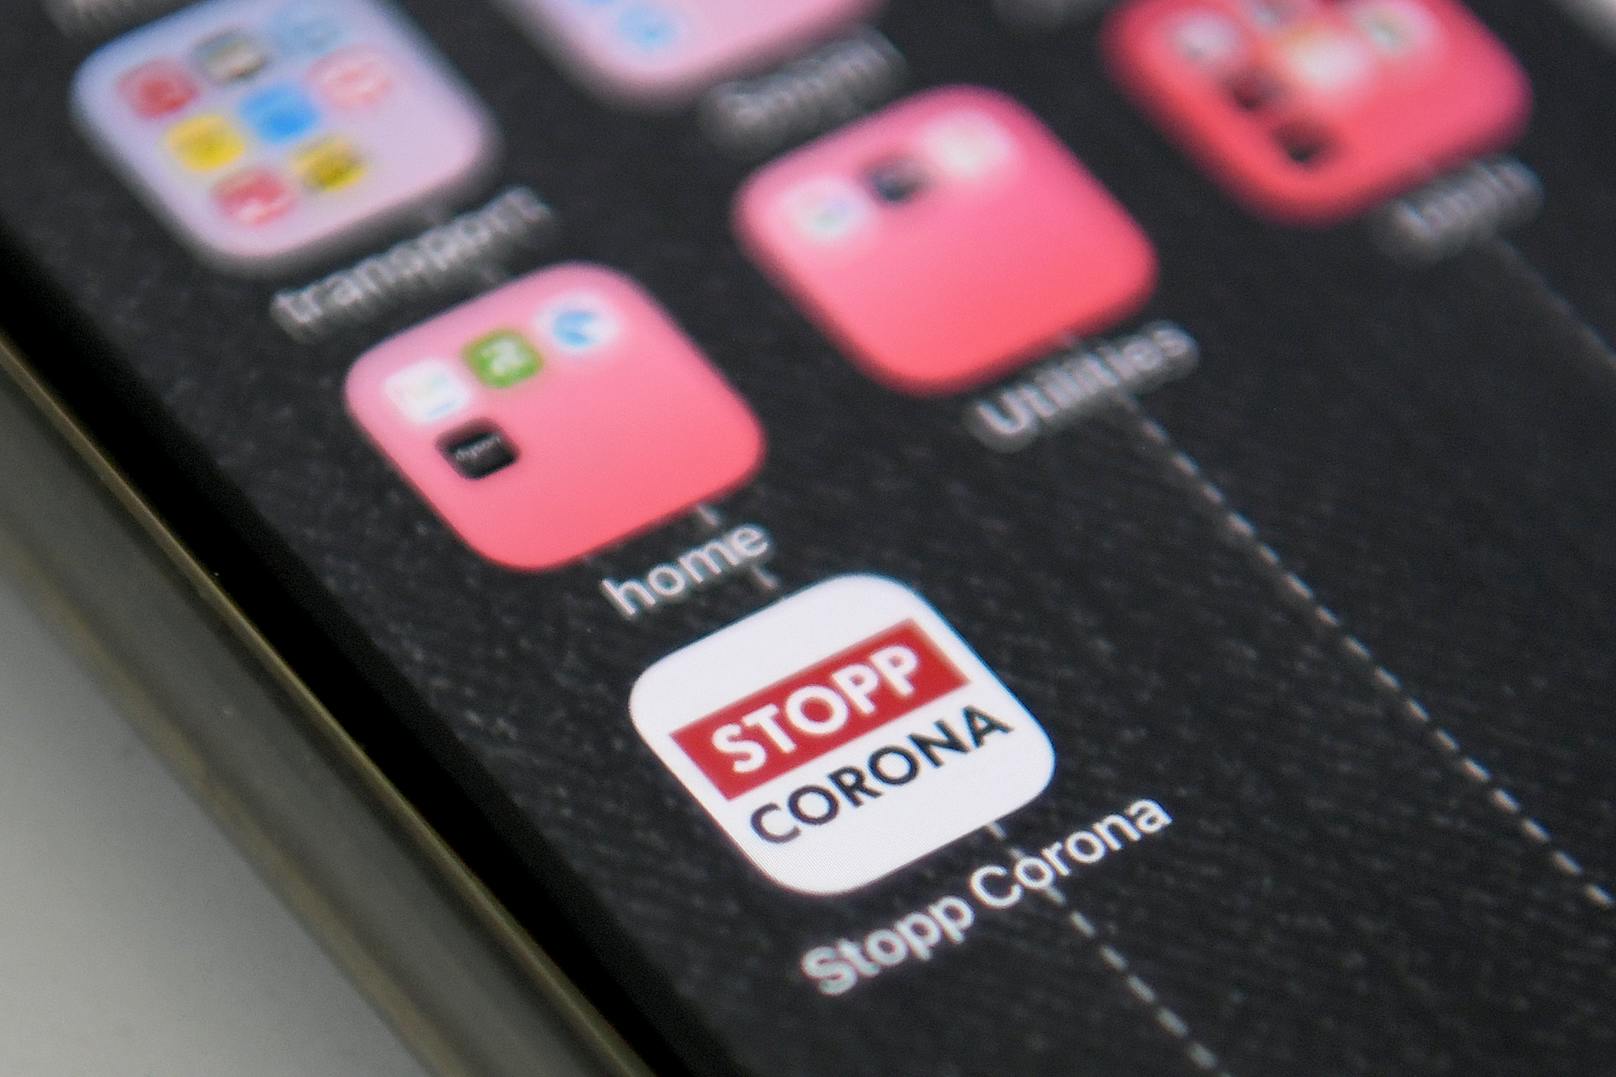 Das Österreichische Rote Kreuz veröffentlichte die "Stopp Corona"-App im Auftrag des Gesundheitsministeriums, der obersten Gesundheitsbehörde Österreichs.